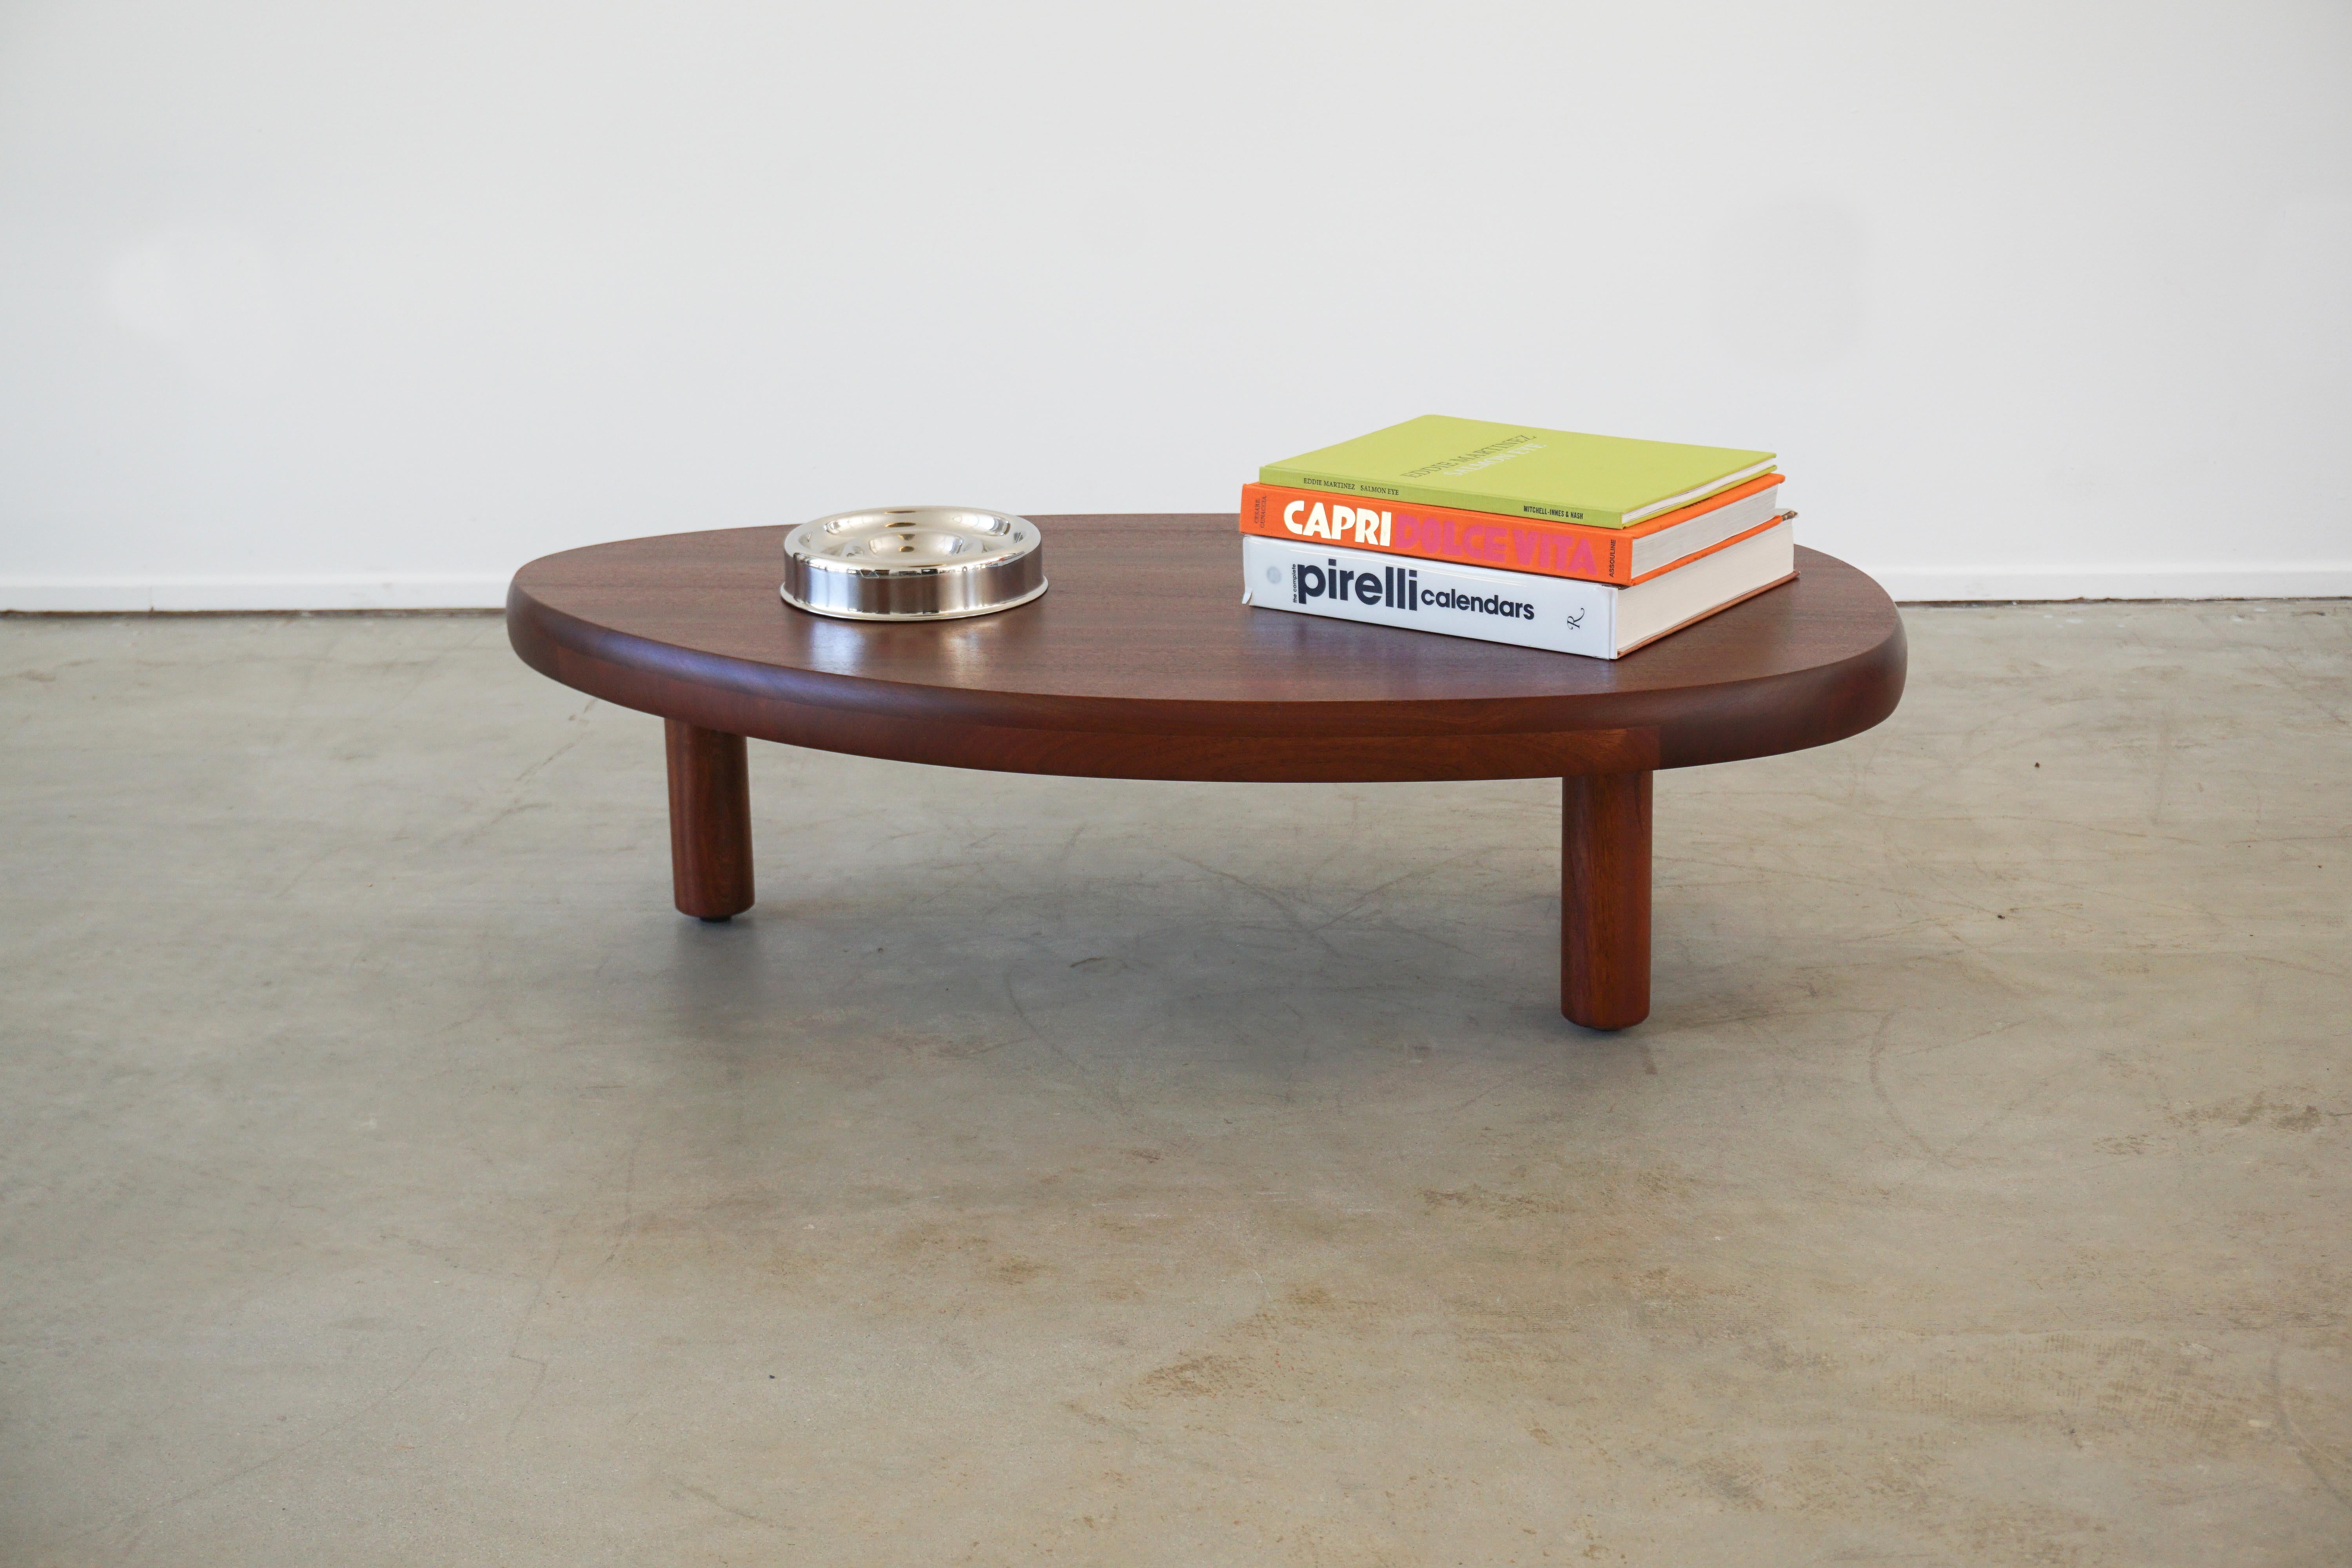 Magnifique table basse dans le style du design français des années 1950 avec 3 pieds et une forme organique libre.
Nouvellement produite par orange en bois d'acajou
Gaines et menuiseries en bois incroyables.
  